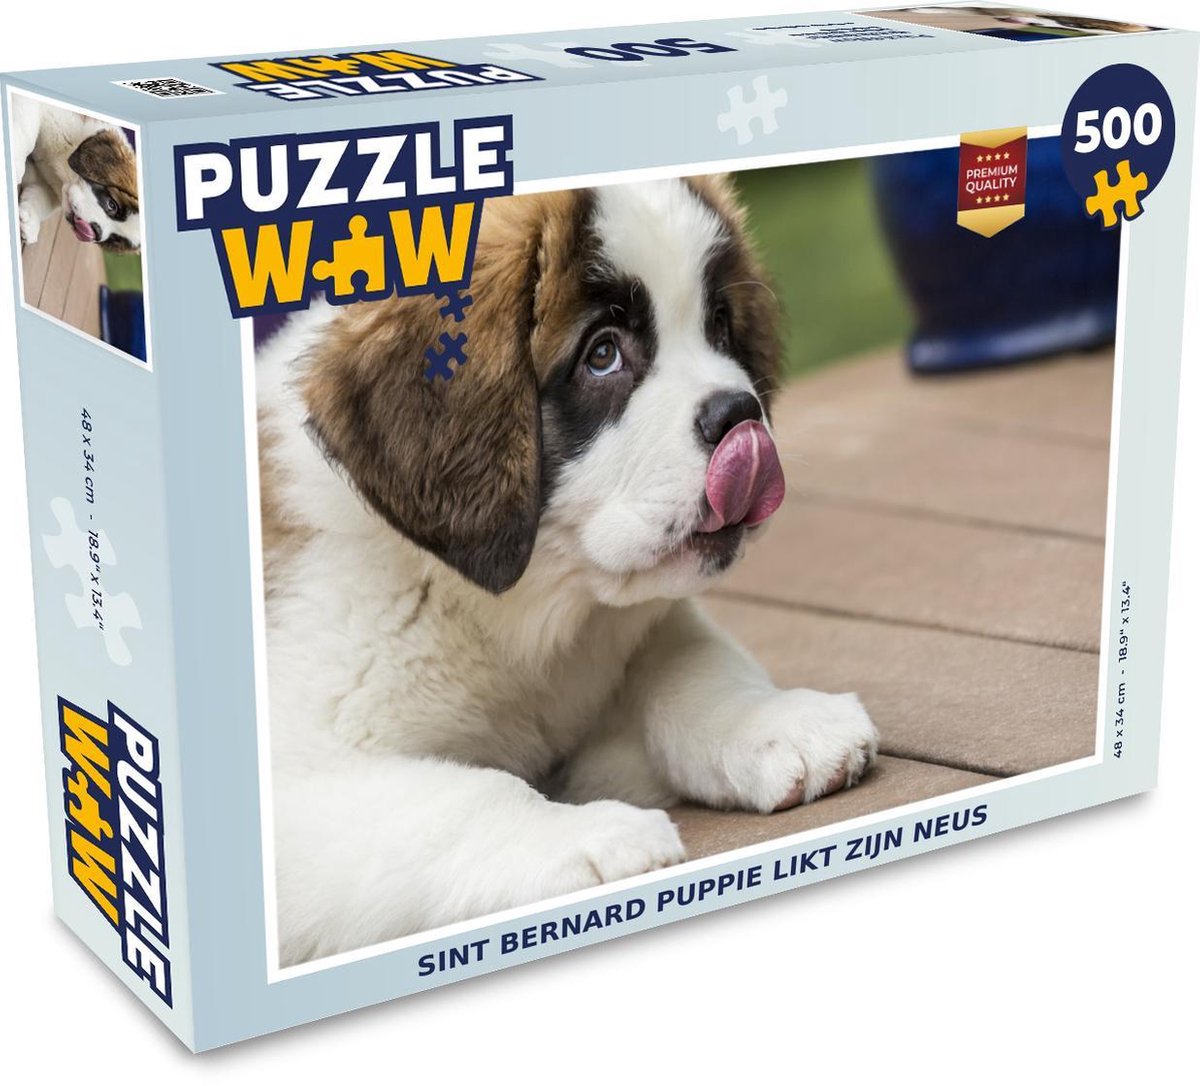 Afbeelding van product Puzzel 500 stukjes Sint Bernard puppy - Sint Bernard puppie likt zijn neus - PuzzleWow heeft +100000 puzzels